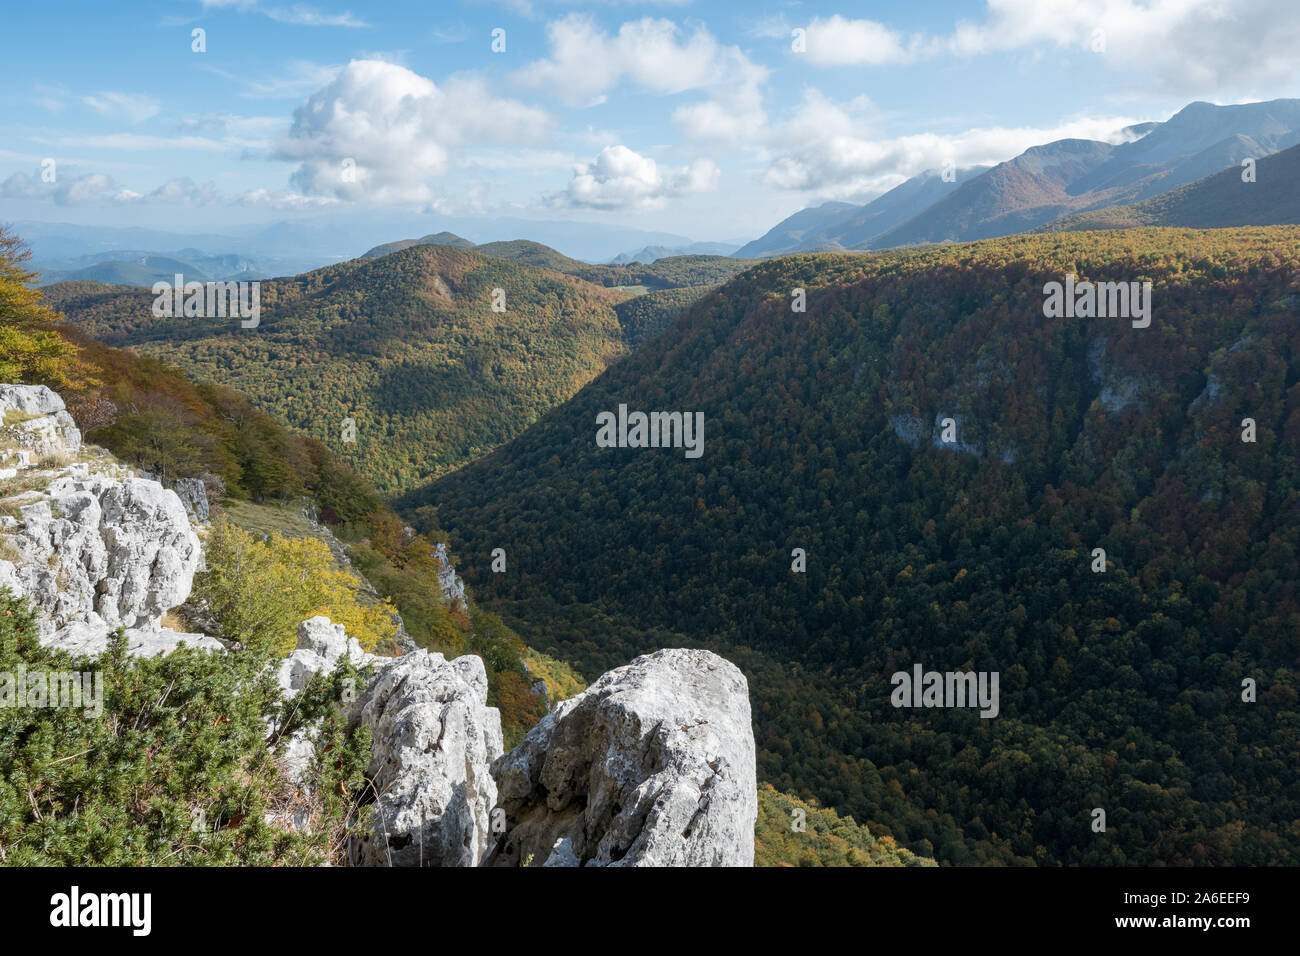 Suggestiva valle con fitti boschi e rocce grigie in primo piano nel Parco Nazionale d'Abruzzo, Barrea, Abruzzo, Italia Foto Stock